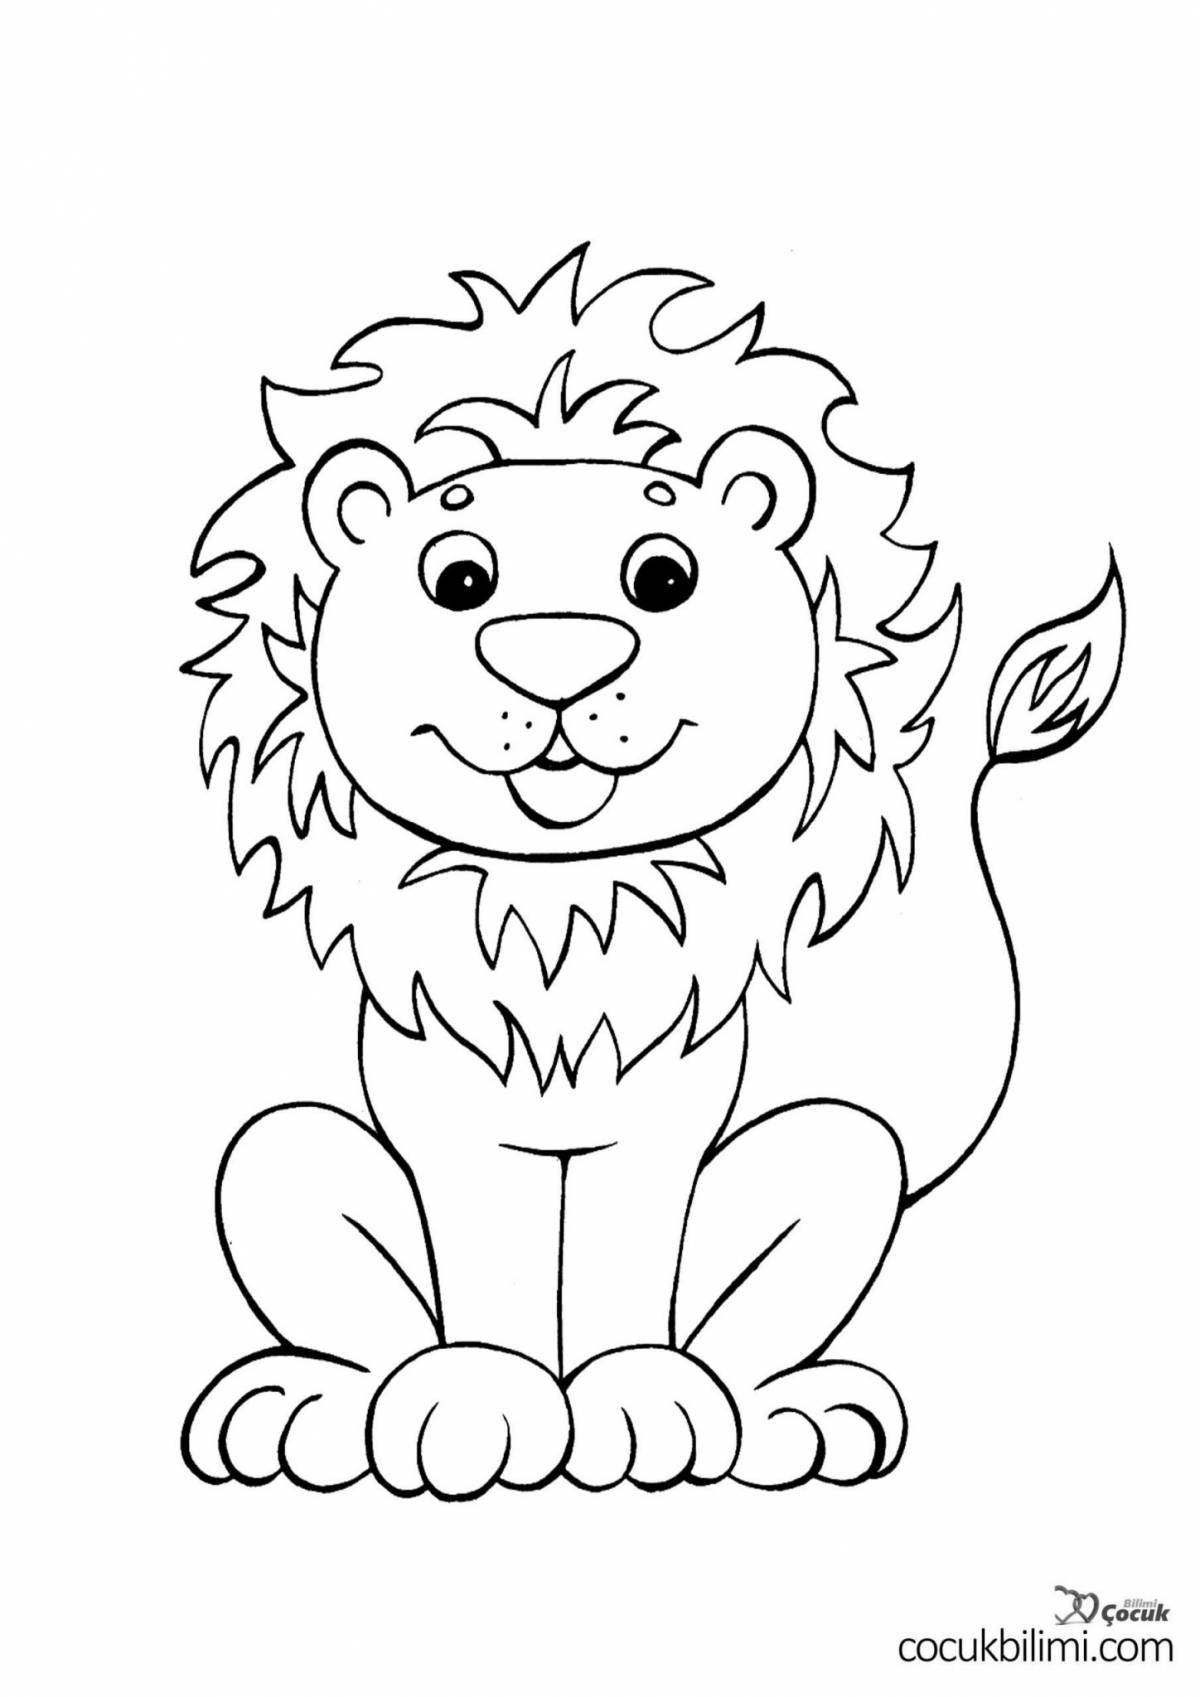 Великолепная раскраска льва для детей 3-4 лет